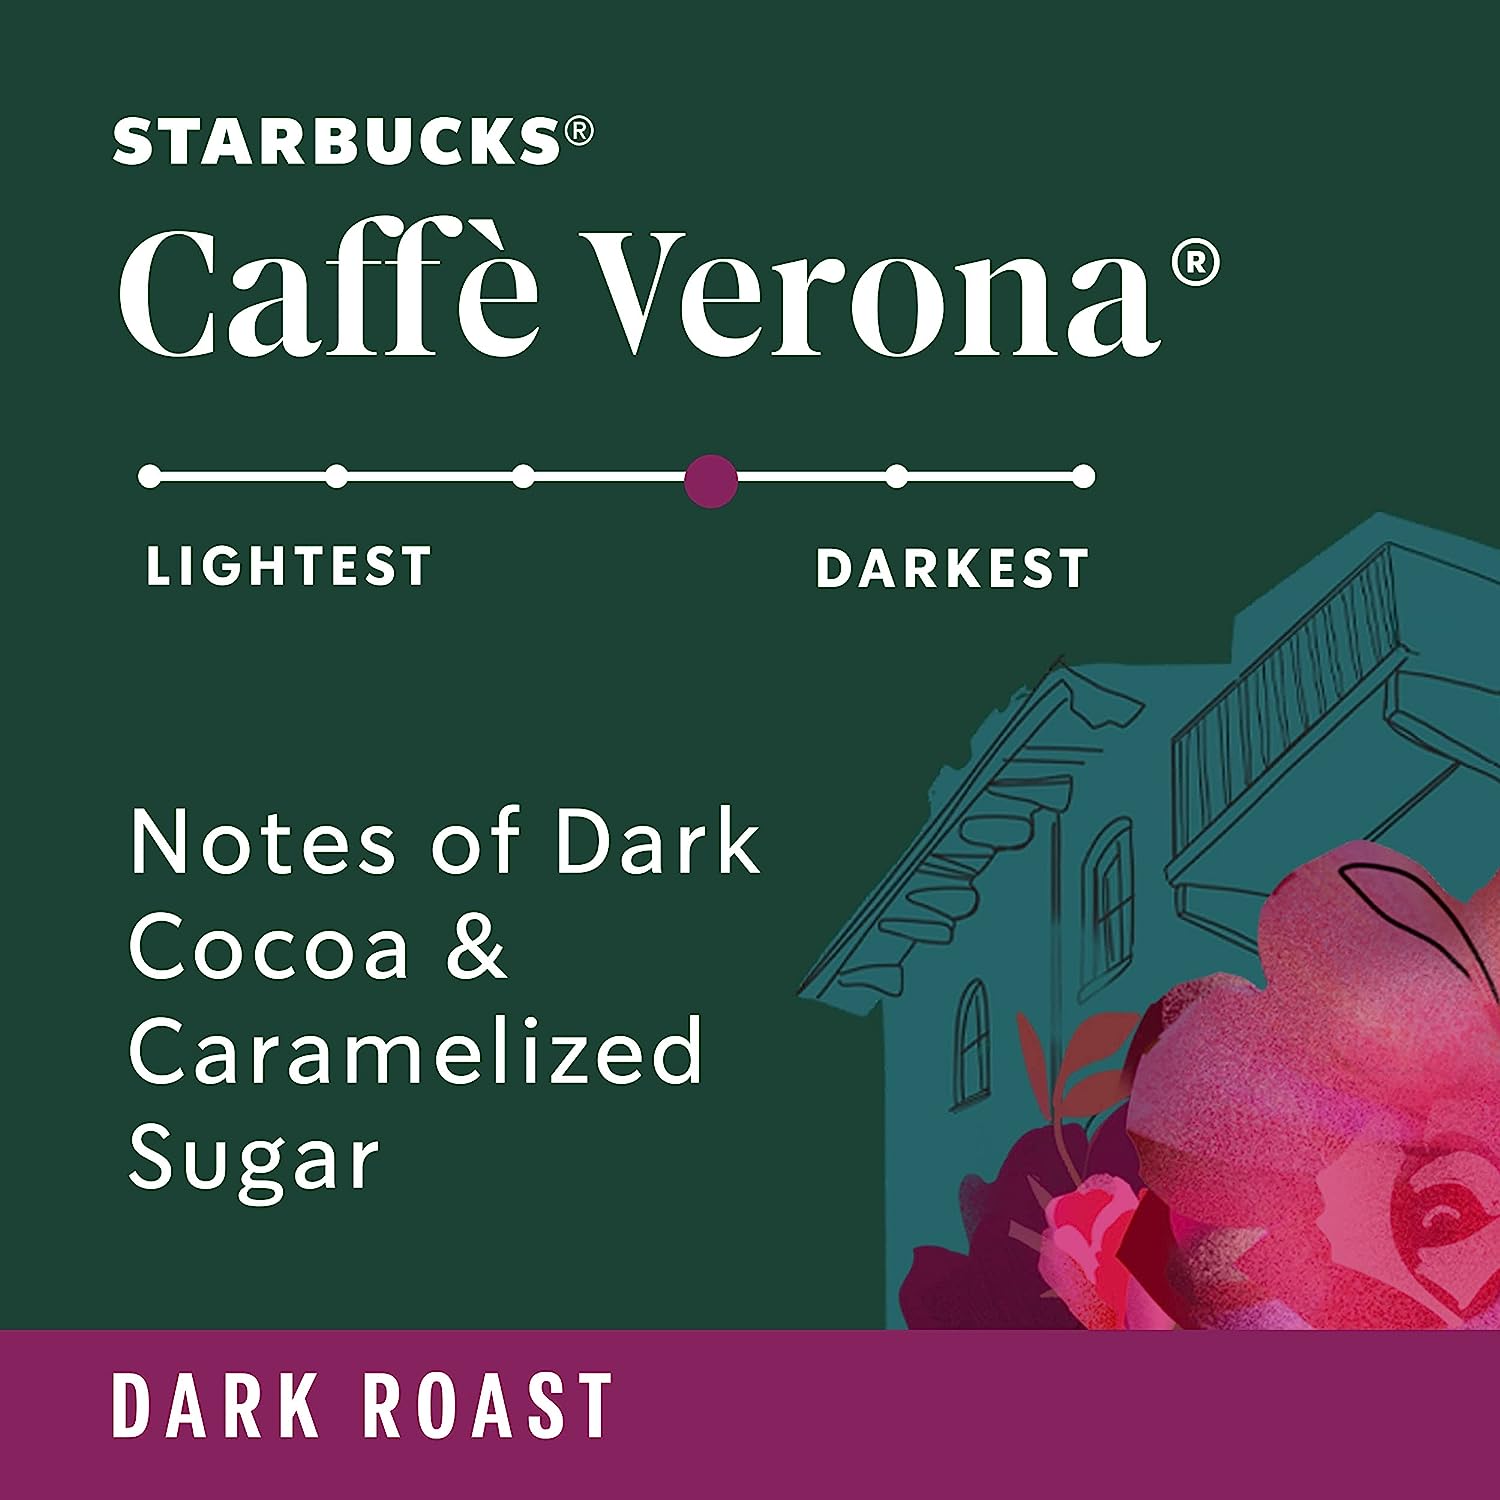 Starbucks K-Cup Coffee Pods—Starbucks Blonde, Medium, Dark Roast & Flavored  Coffee—Variety Pack for Keurig Brewers—1 box (40 pods total)